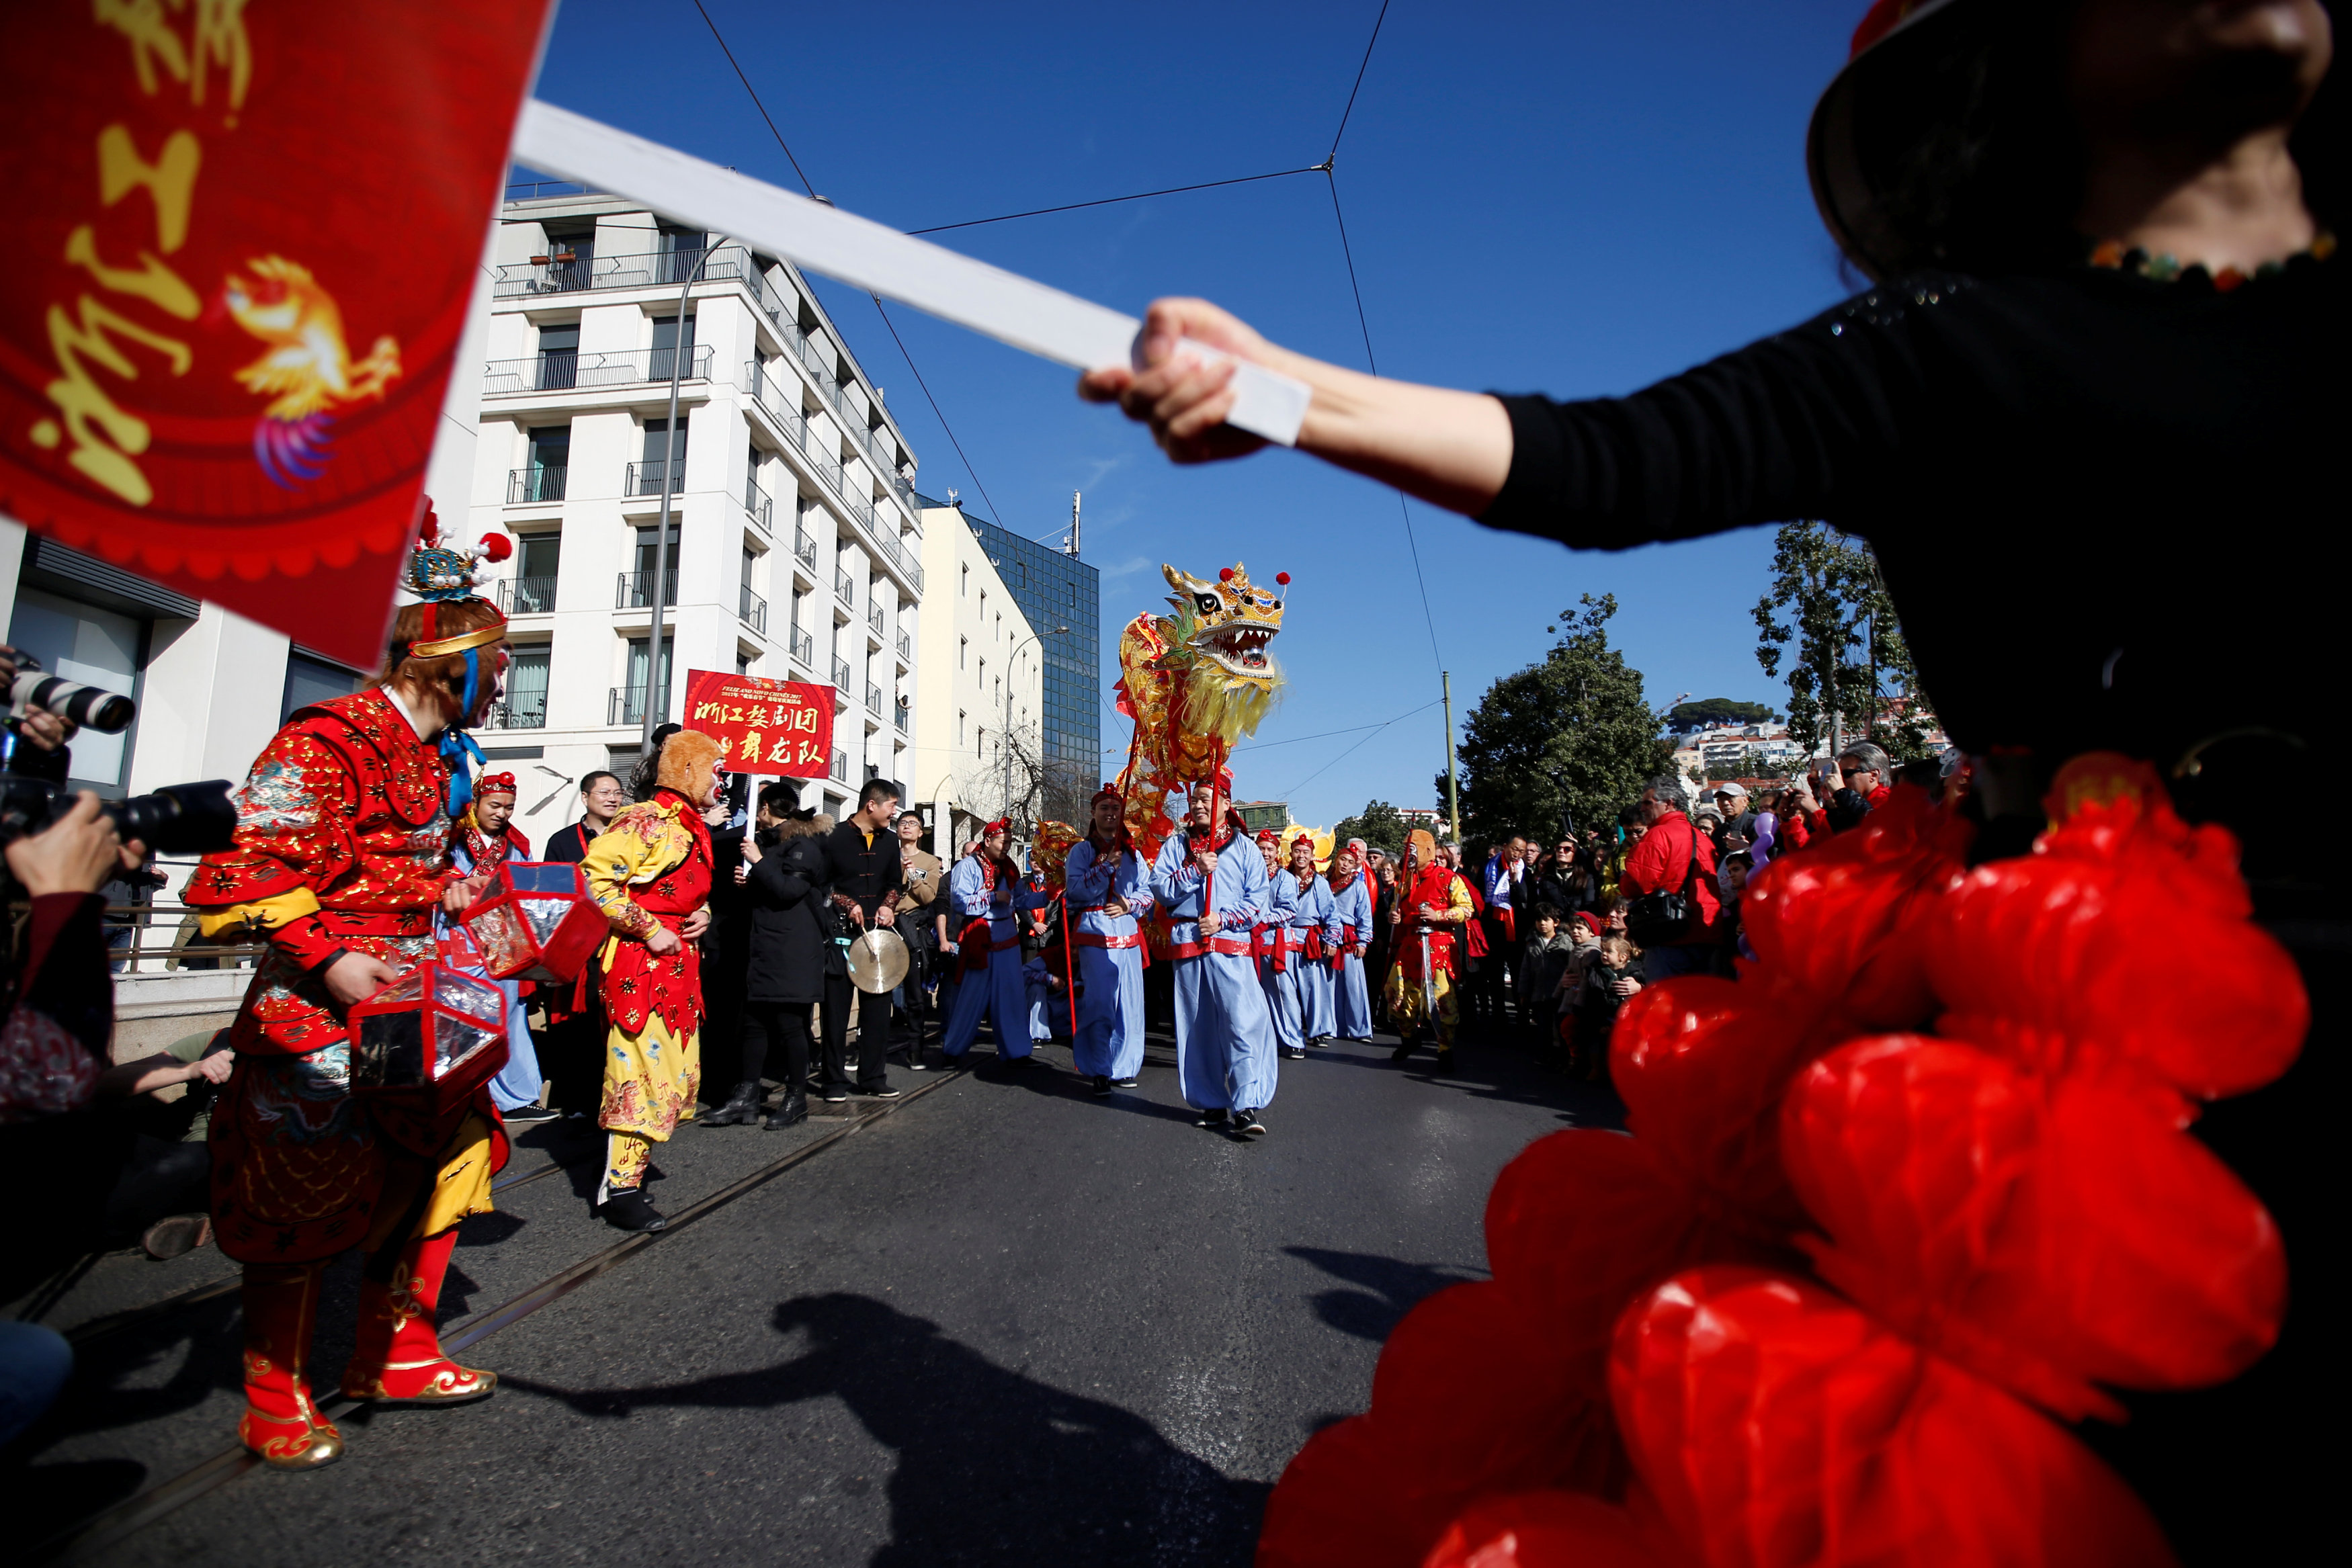 احتفالات بالسنة الصينية الجديدة فى شوارع مدينة لشبونة بالبرتغال